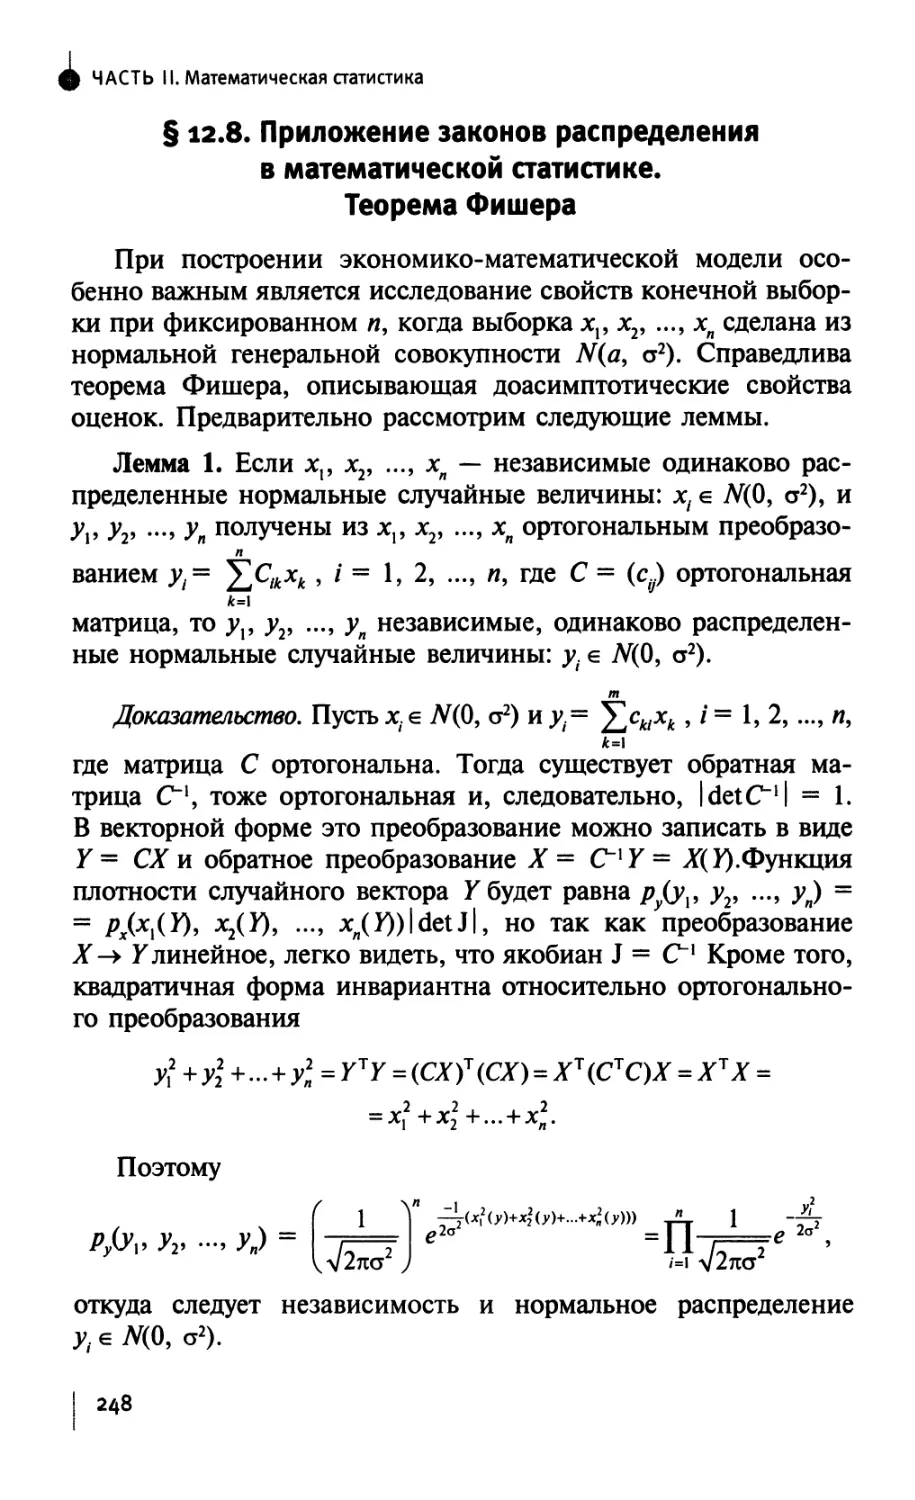 § 12.8. Приложение законов распределения в математической статистике. Теорема Фишера